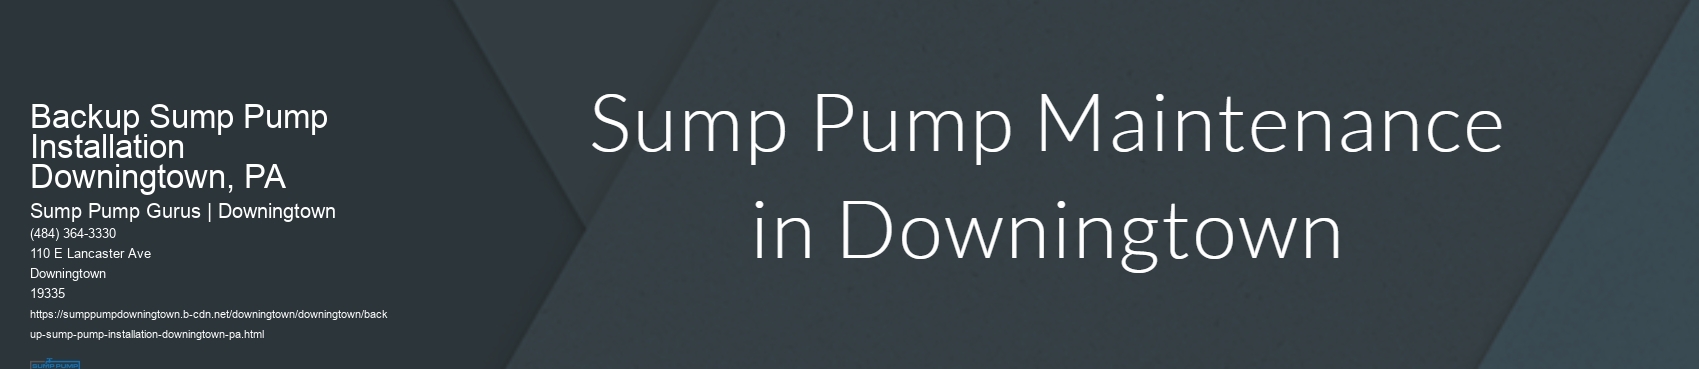 Backup Sump Pump Installation Downingtown, PA